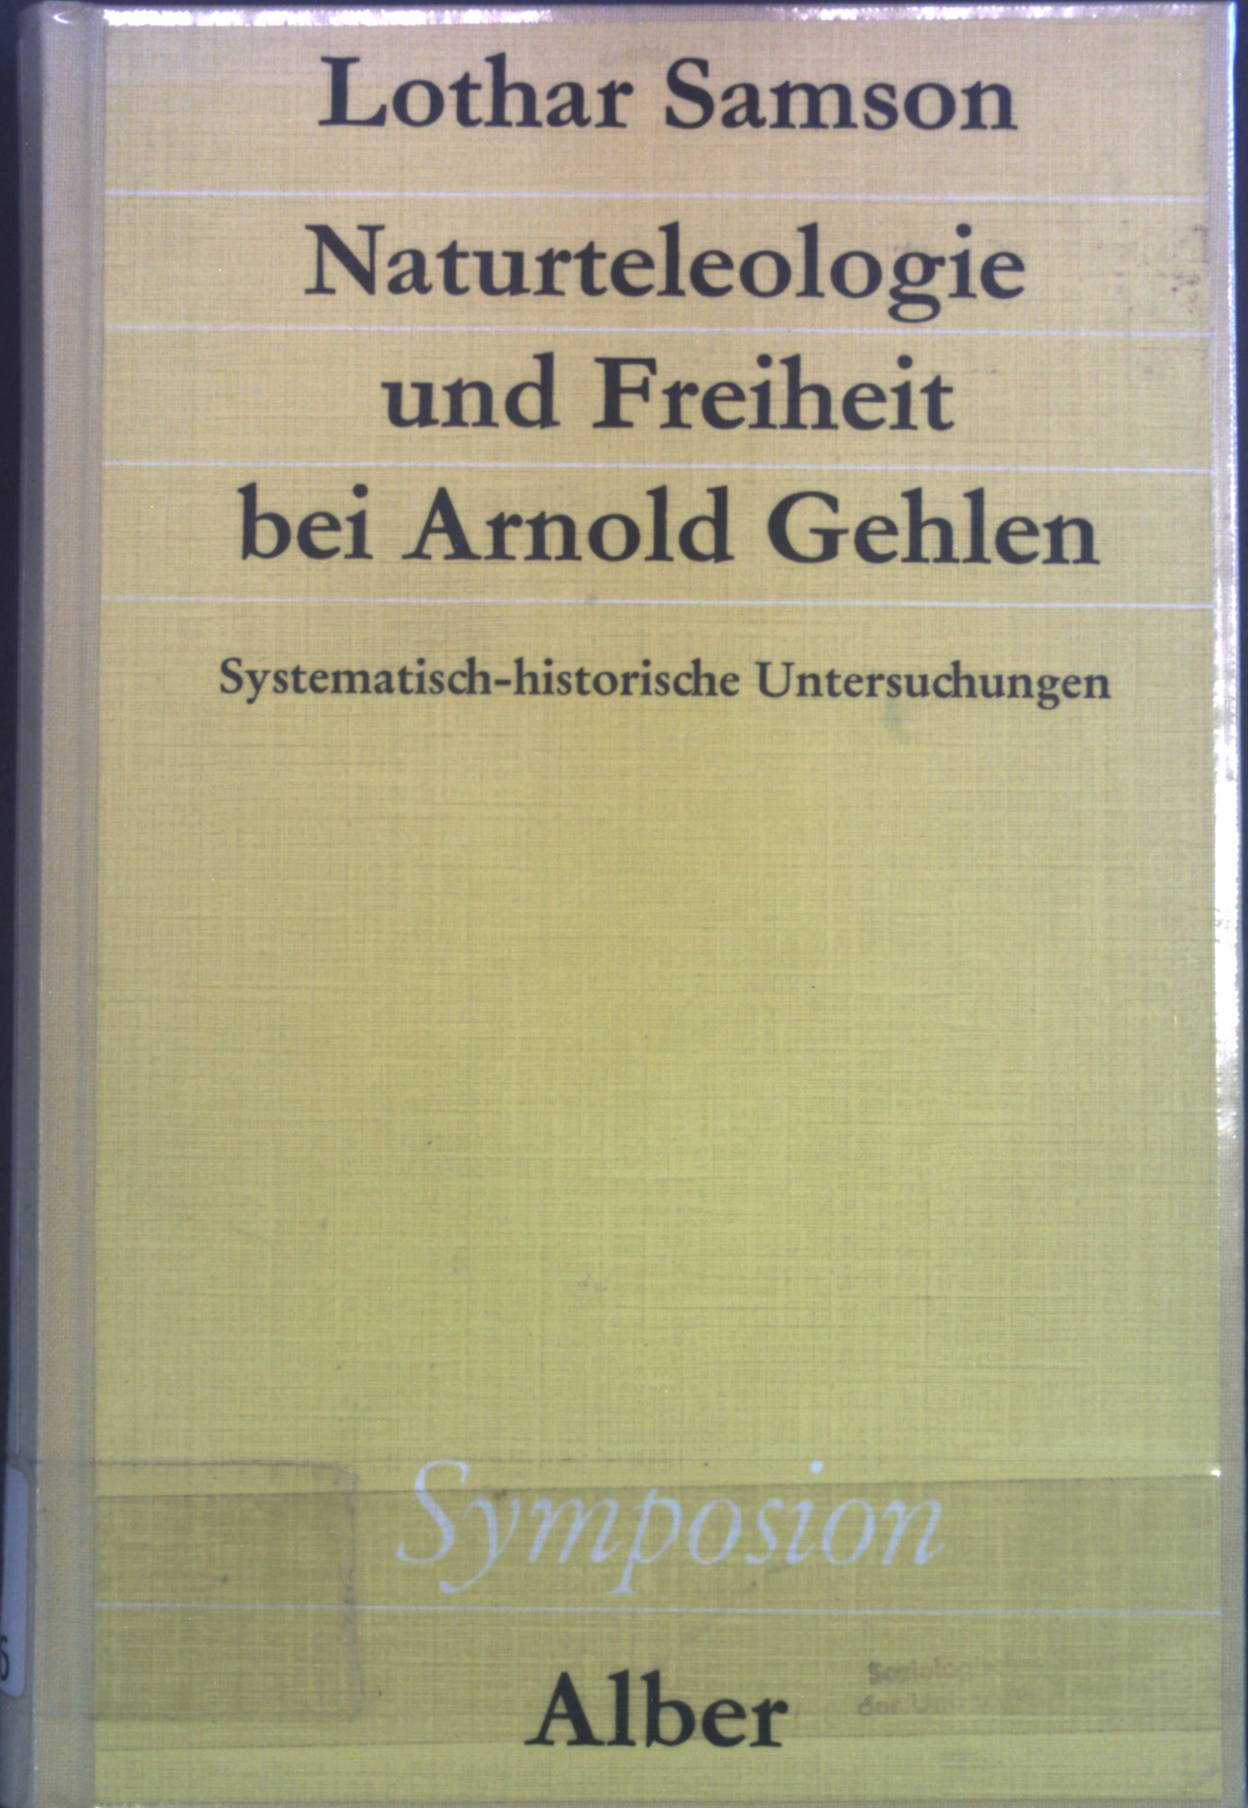 Naturteleologie und Freiheit bei Arnold Gehlen : systemat.-histor. Unters. Symposion ; 54 - Samson, Lothar